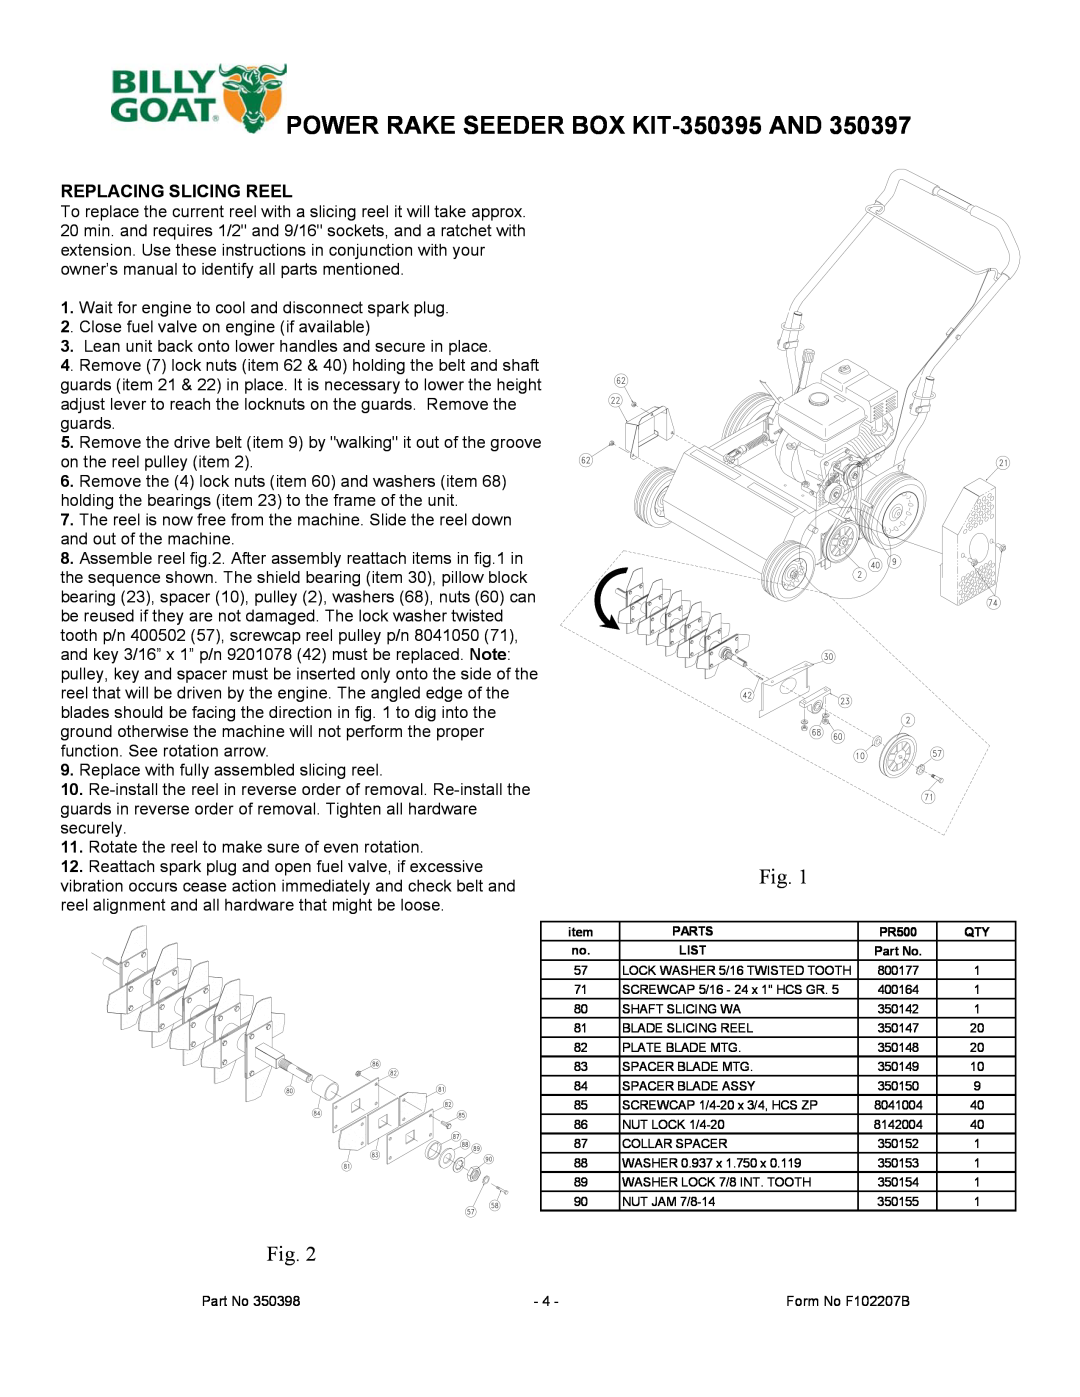 Billy Goat 350397 manual POWER RAKE SEEDER BOX KIT-350395AND, Replacing Slicing Reel 